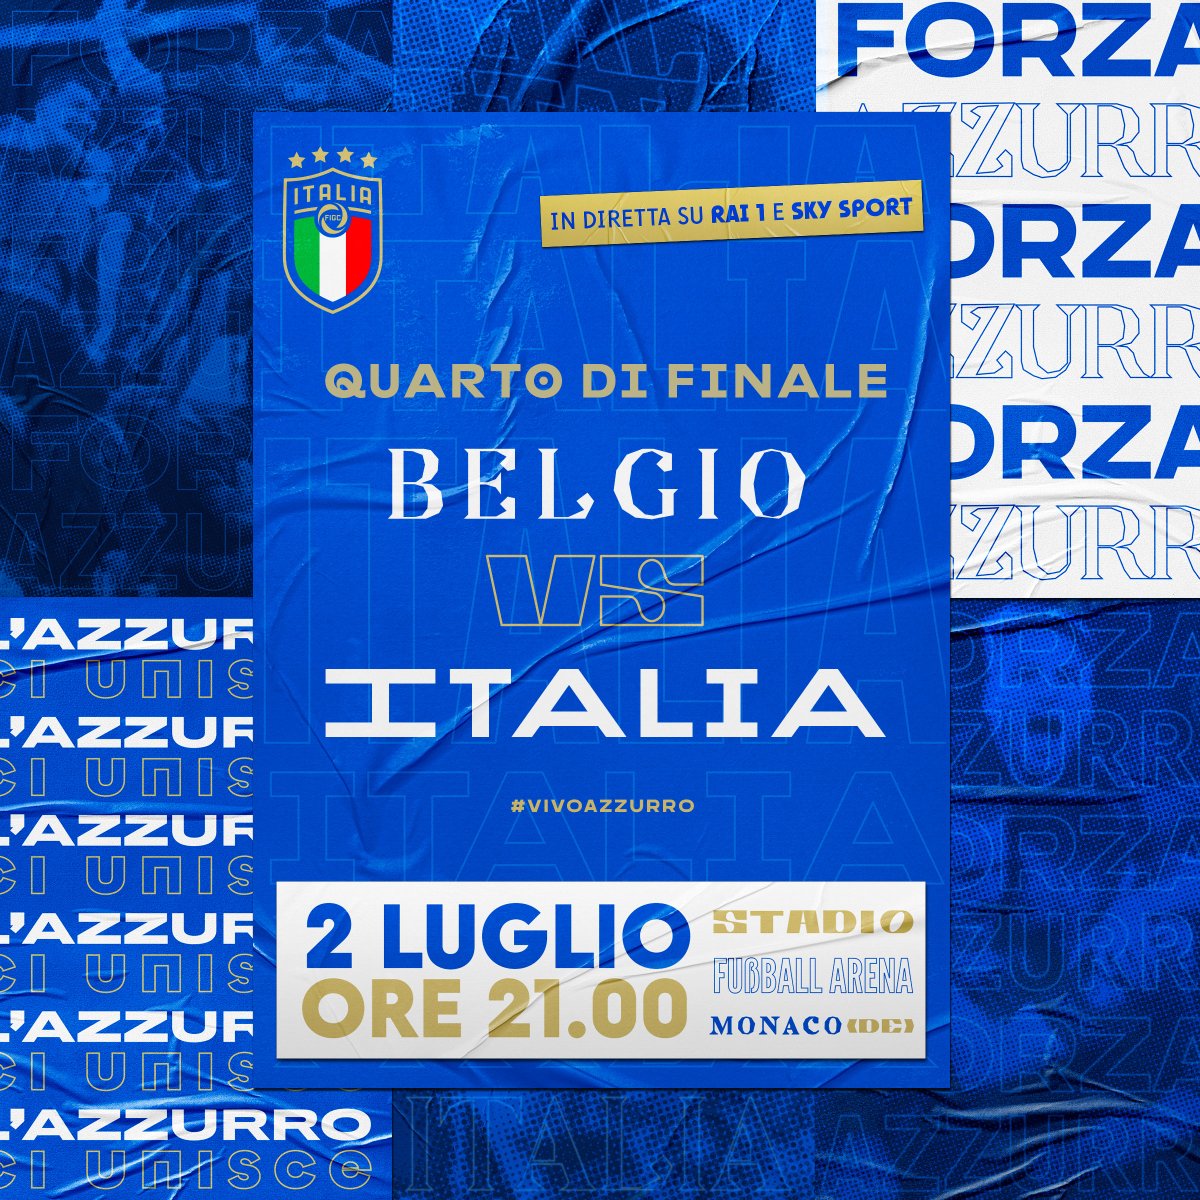 #EURO2020 🇪🇺 

🇧🇪 #Belgio 🆚 🇮🇹 #Italia

⏱️ Oggi, h 21.00
🏟️ #FußballArena - #MonacoDiBaviera
⚽️ Quarti di finale
📺 In diretta su #Rai1 e #SkySport 

#Azzurri #VivoAzzurro
#ITA #Nazionale
#BELITA #BelgioItalia